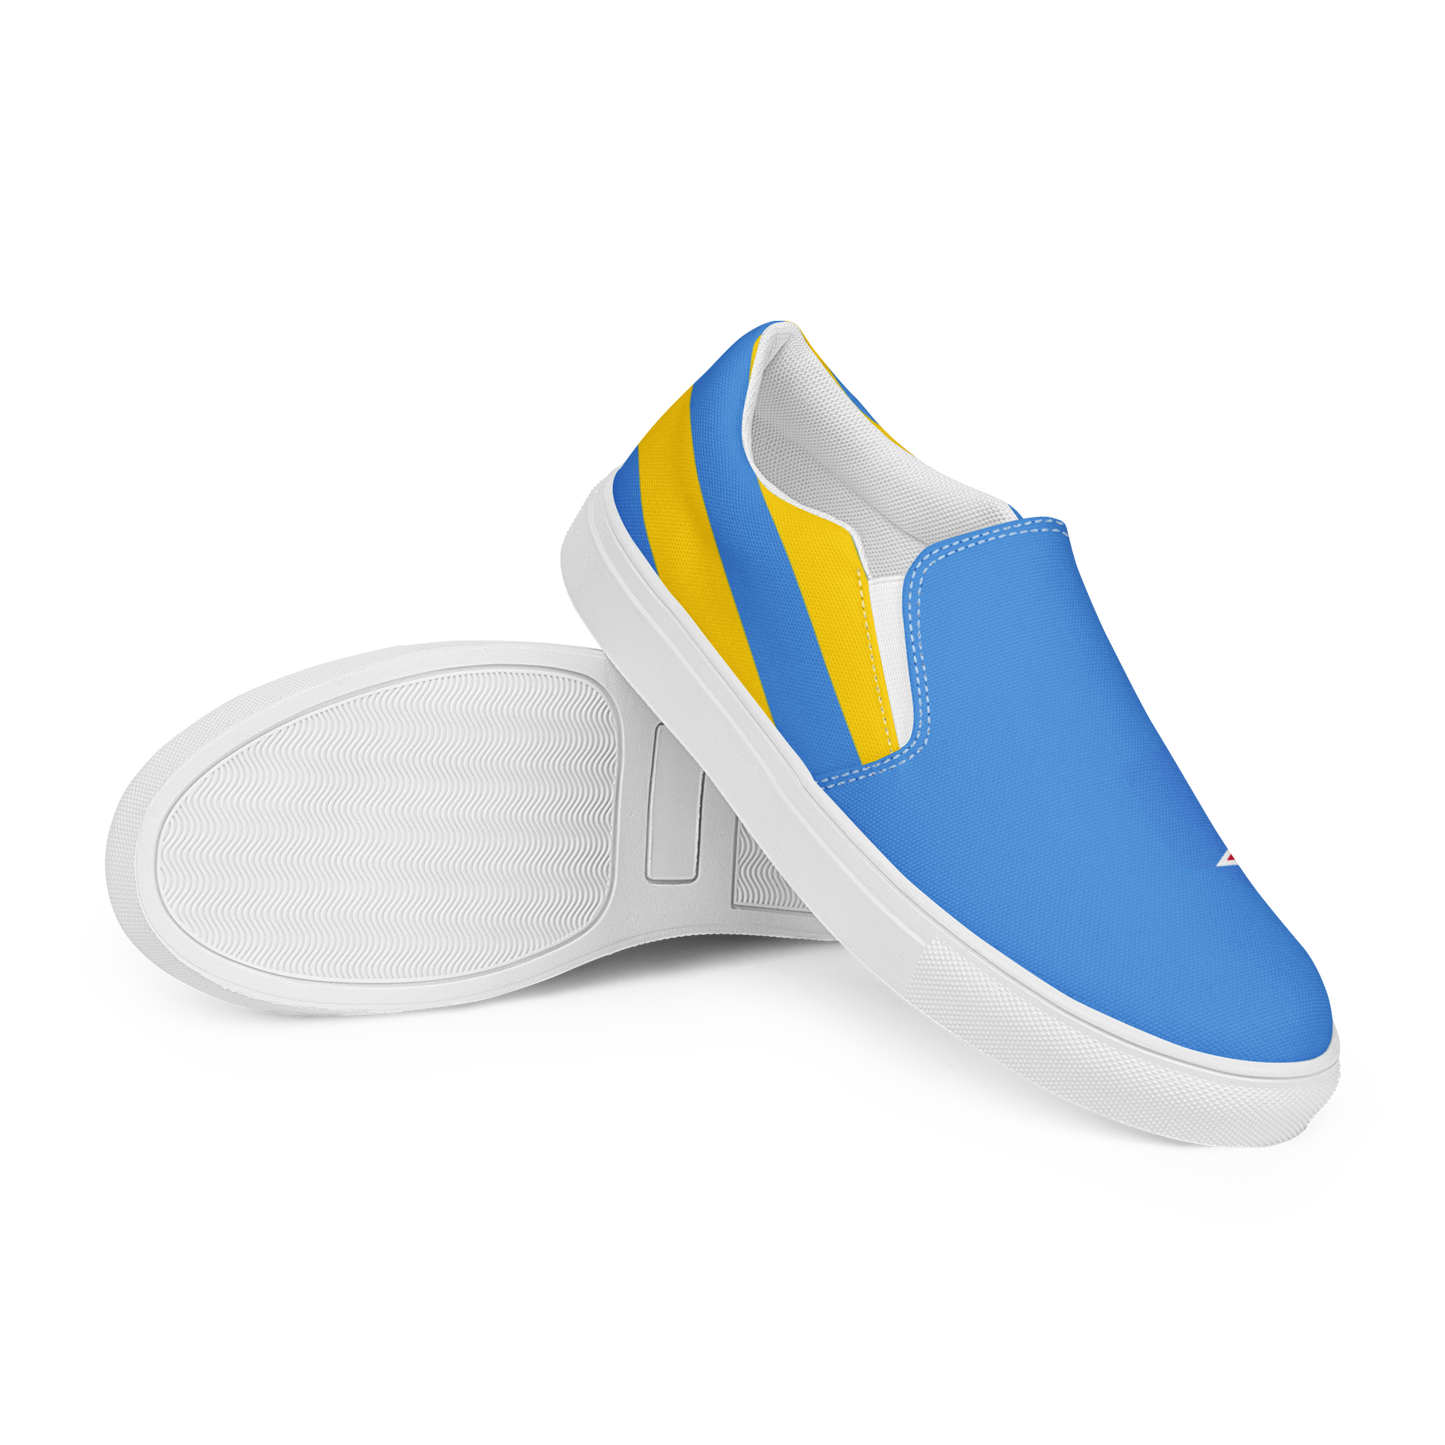 Aruba Men’s slip-on canvas shoes